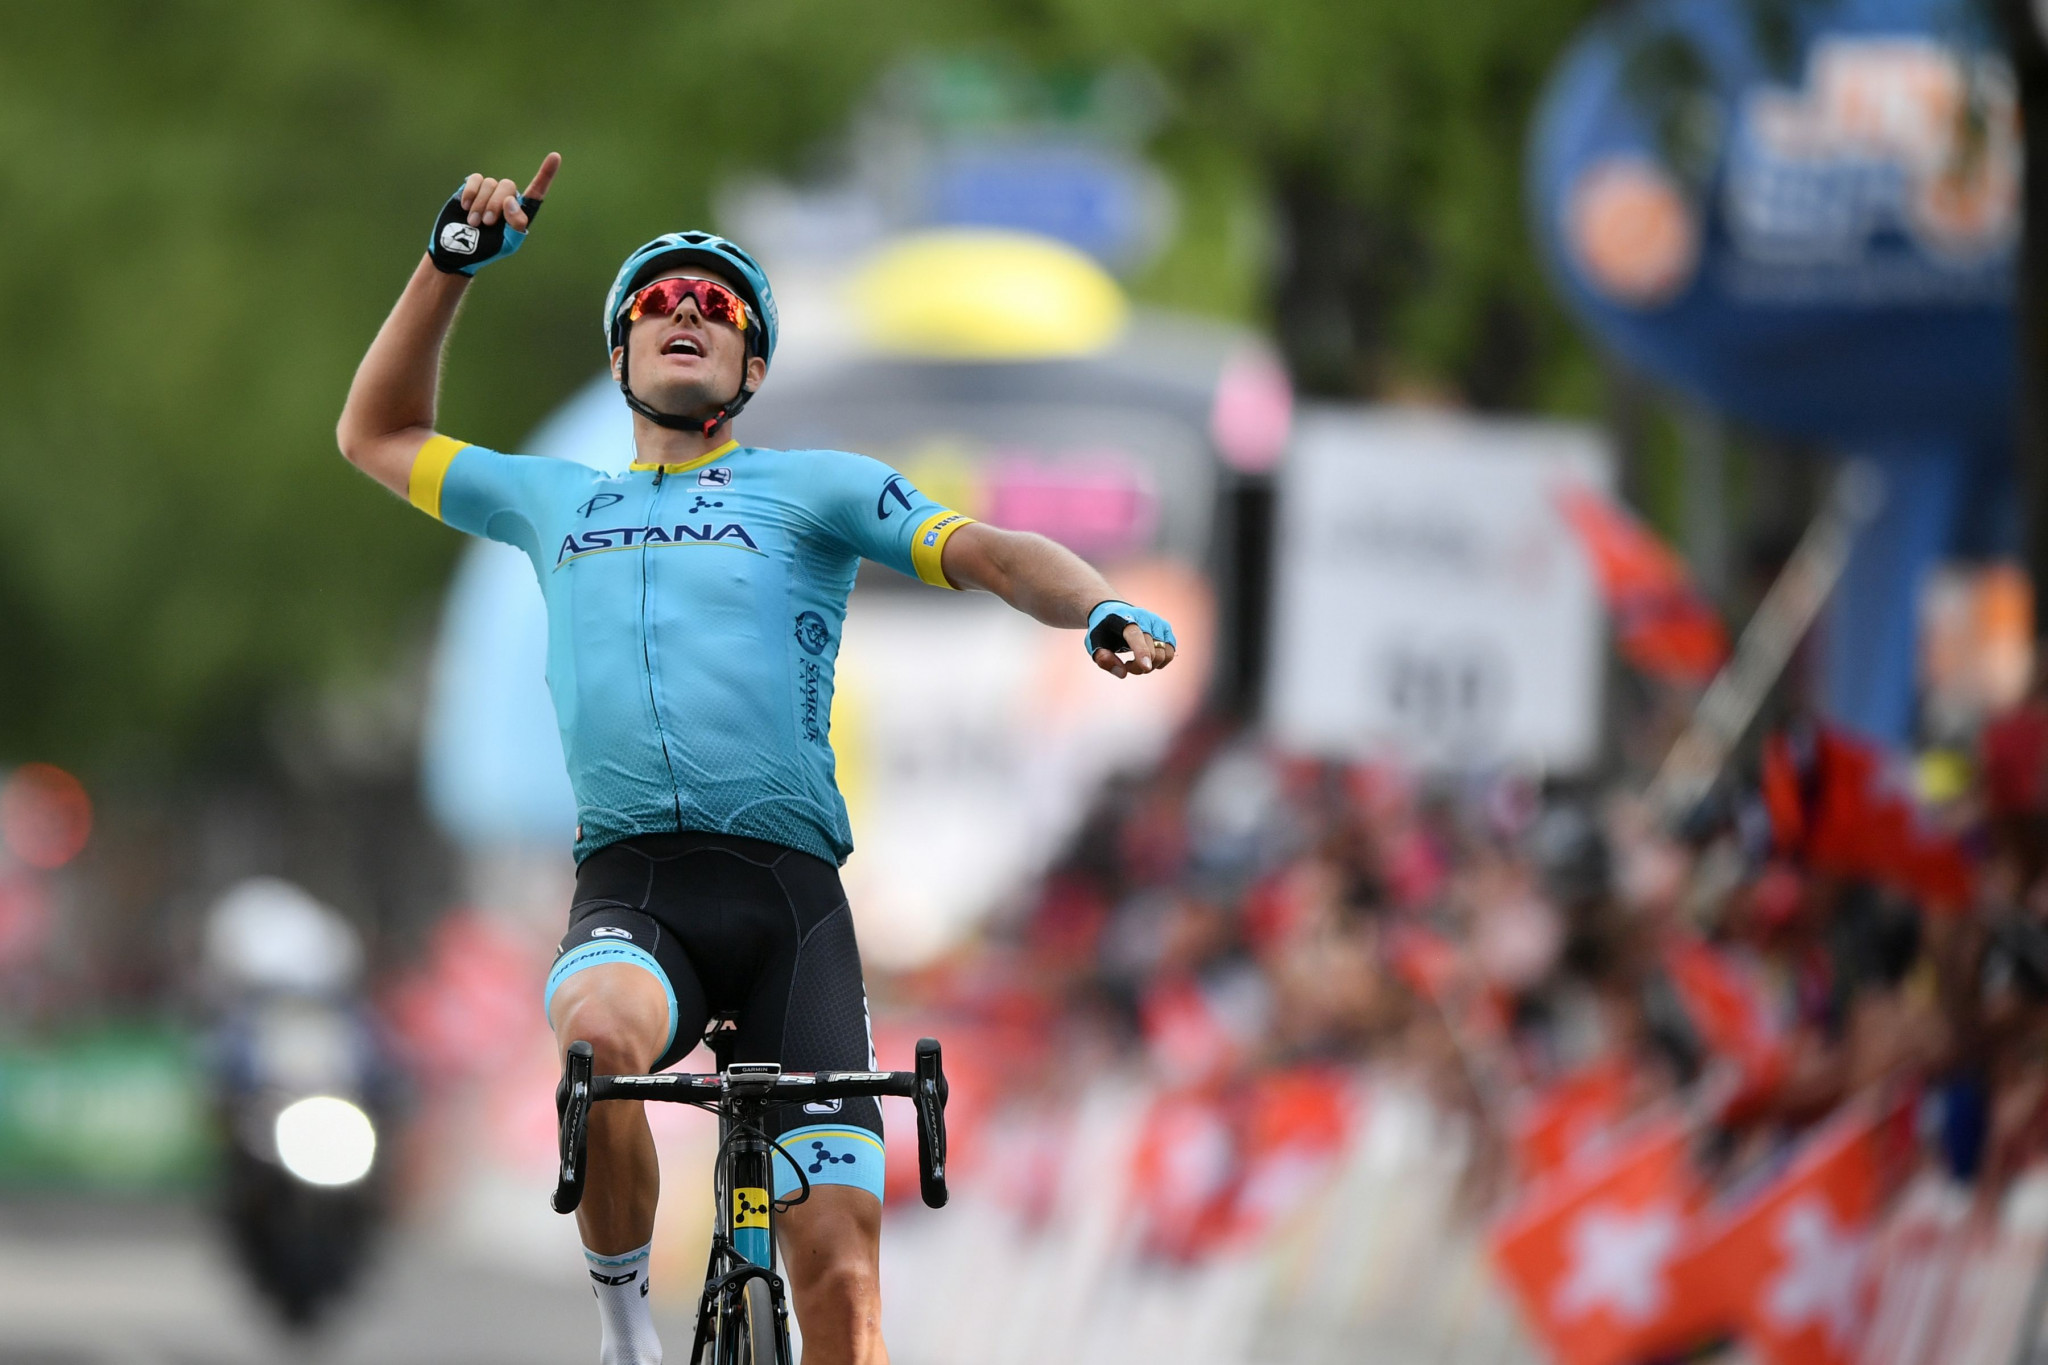 Fuglsang wins key stage of Tour de Romandie but Roglič retains control